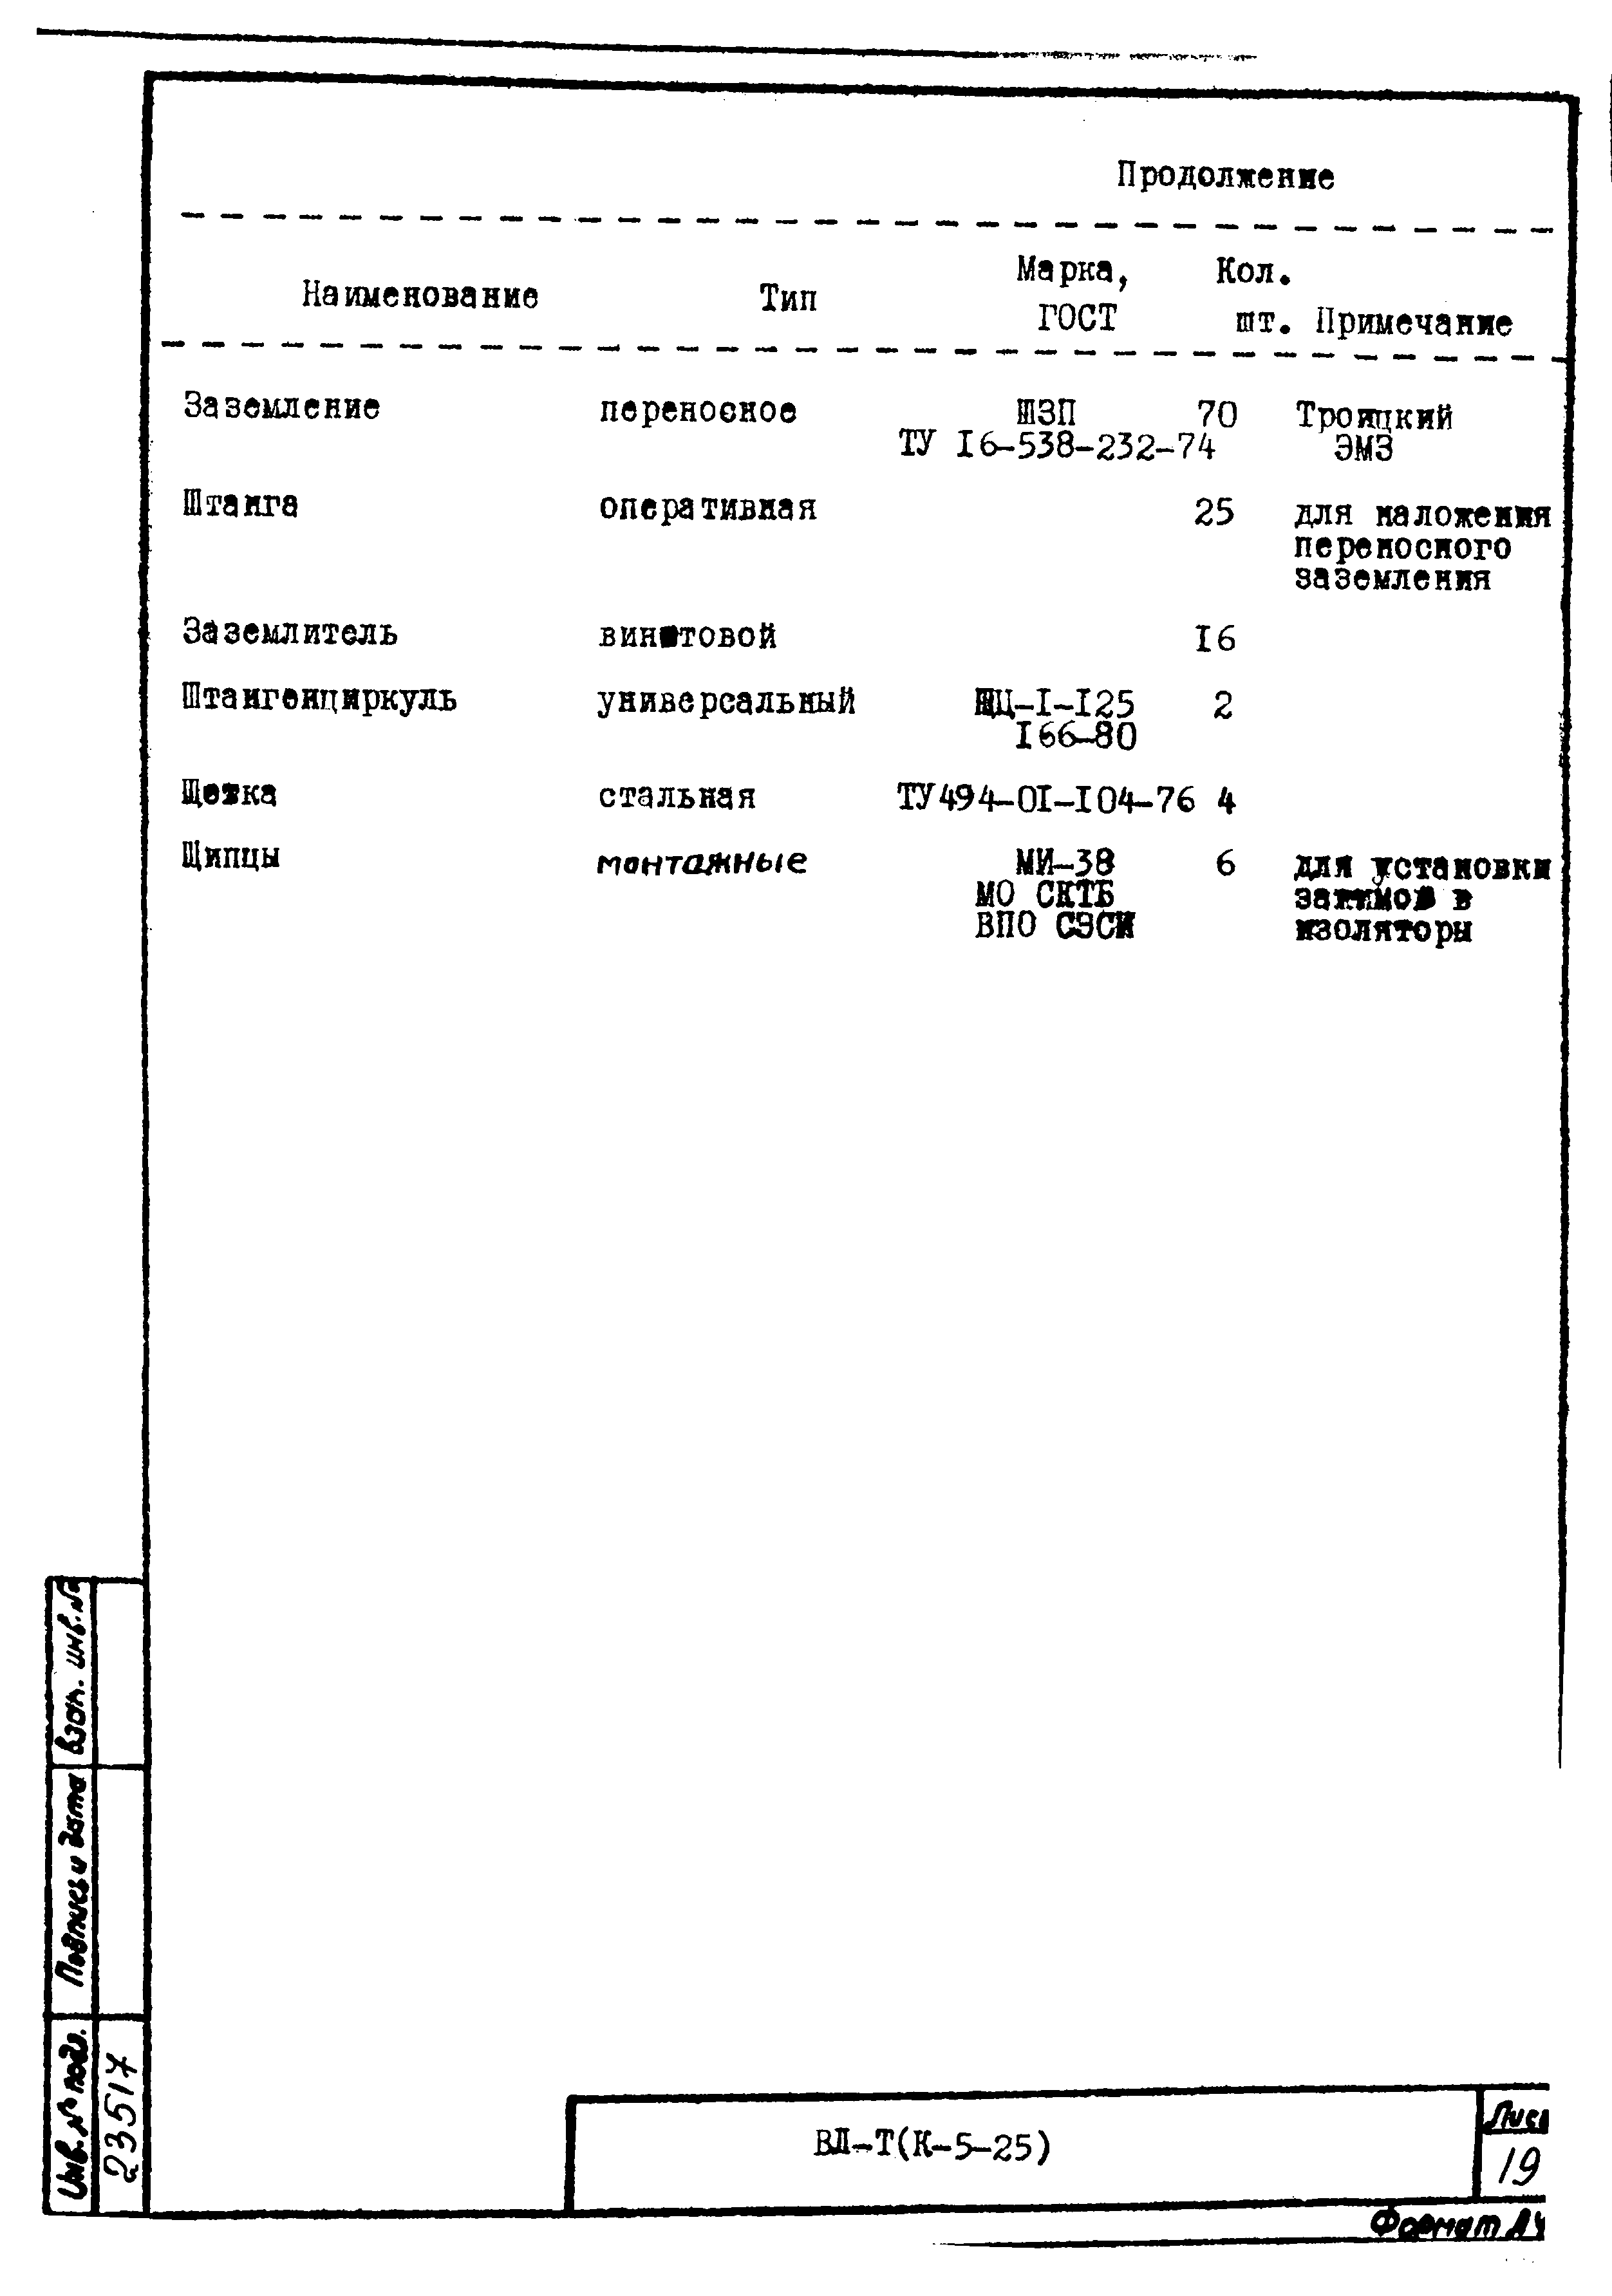 Технологическая карта К-5-25-17